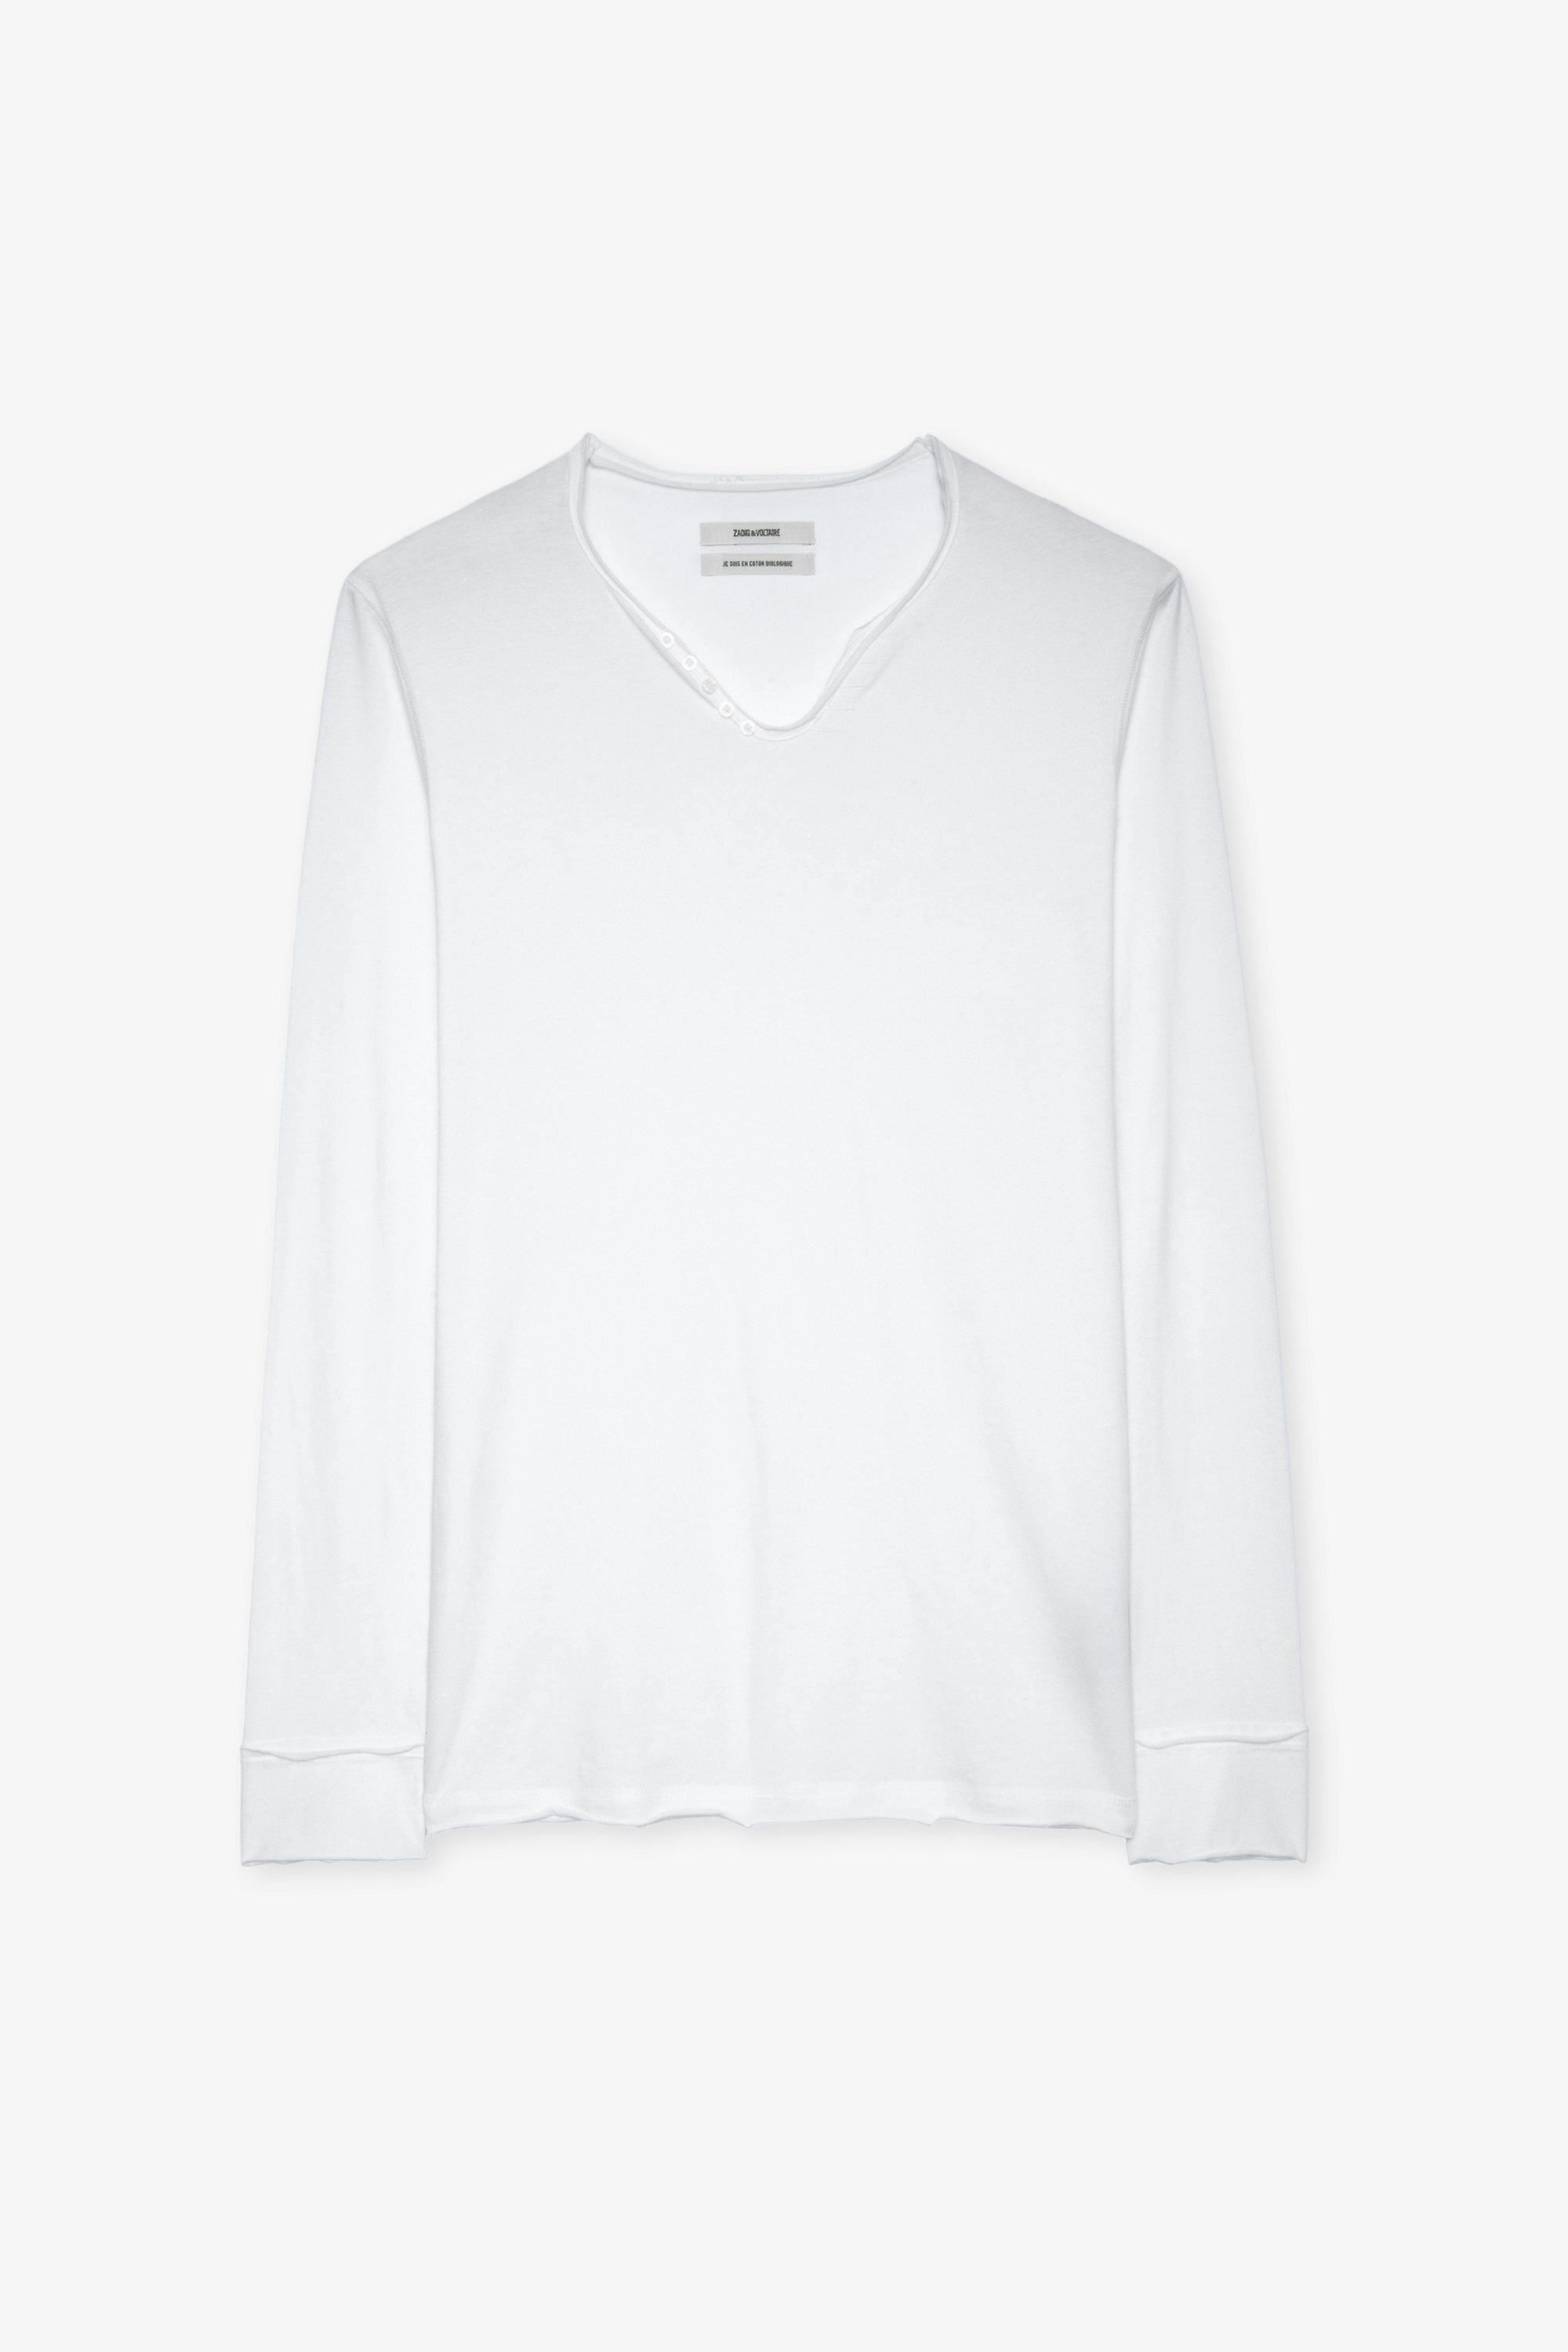 T-shirt Monastir Weißes Herren-T-shirt aus Baumwolle mit Henley-Ausschnitt